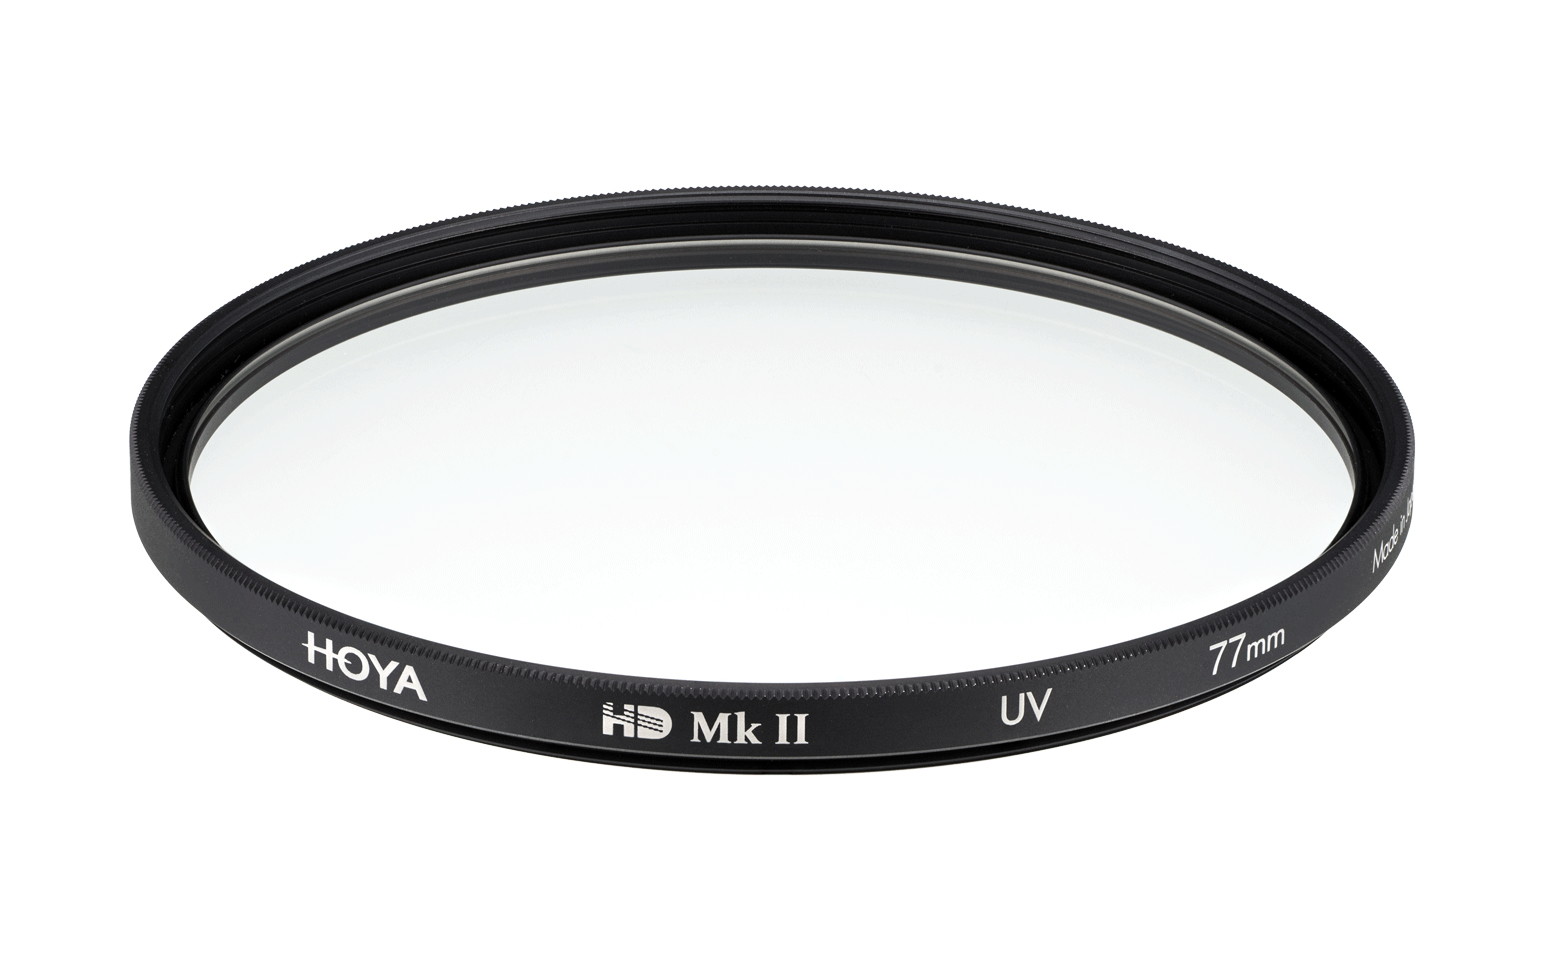 Photos - Lens Filter Hoya HD Mk II UV Filter Polarising camera filter 5.8 cm 024066070456 